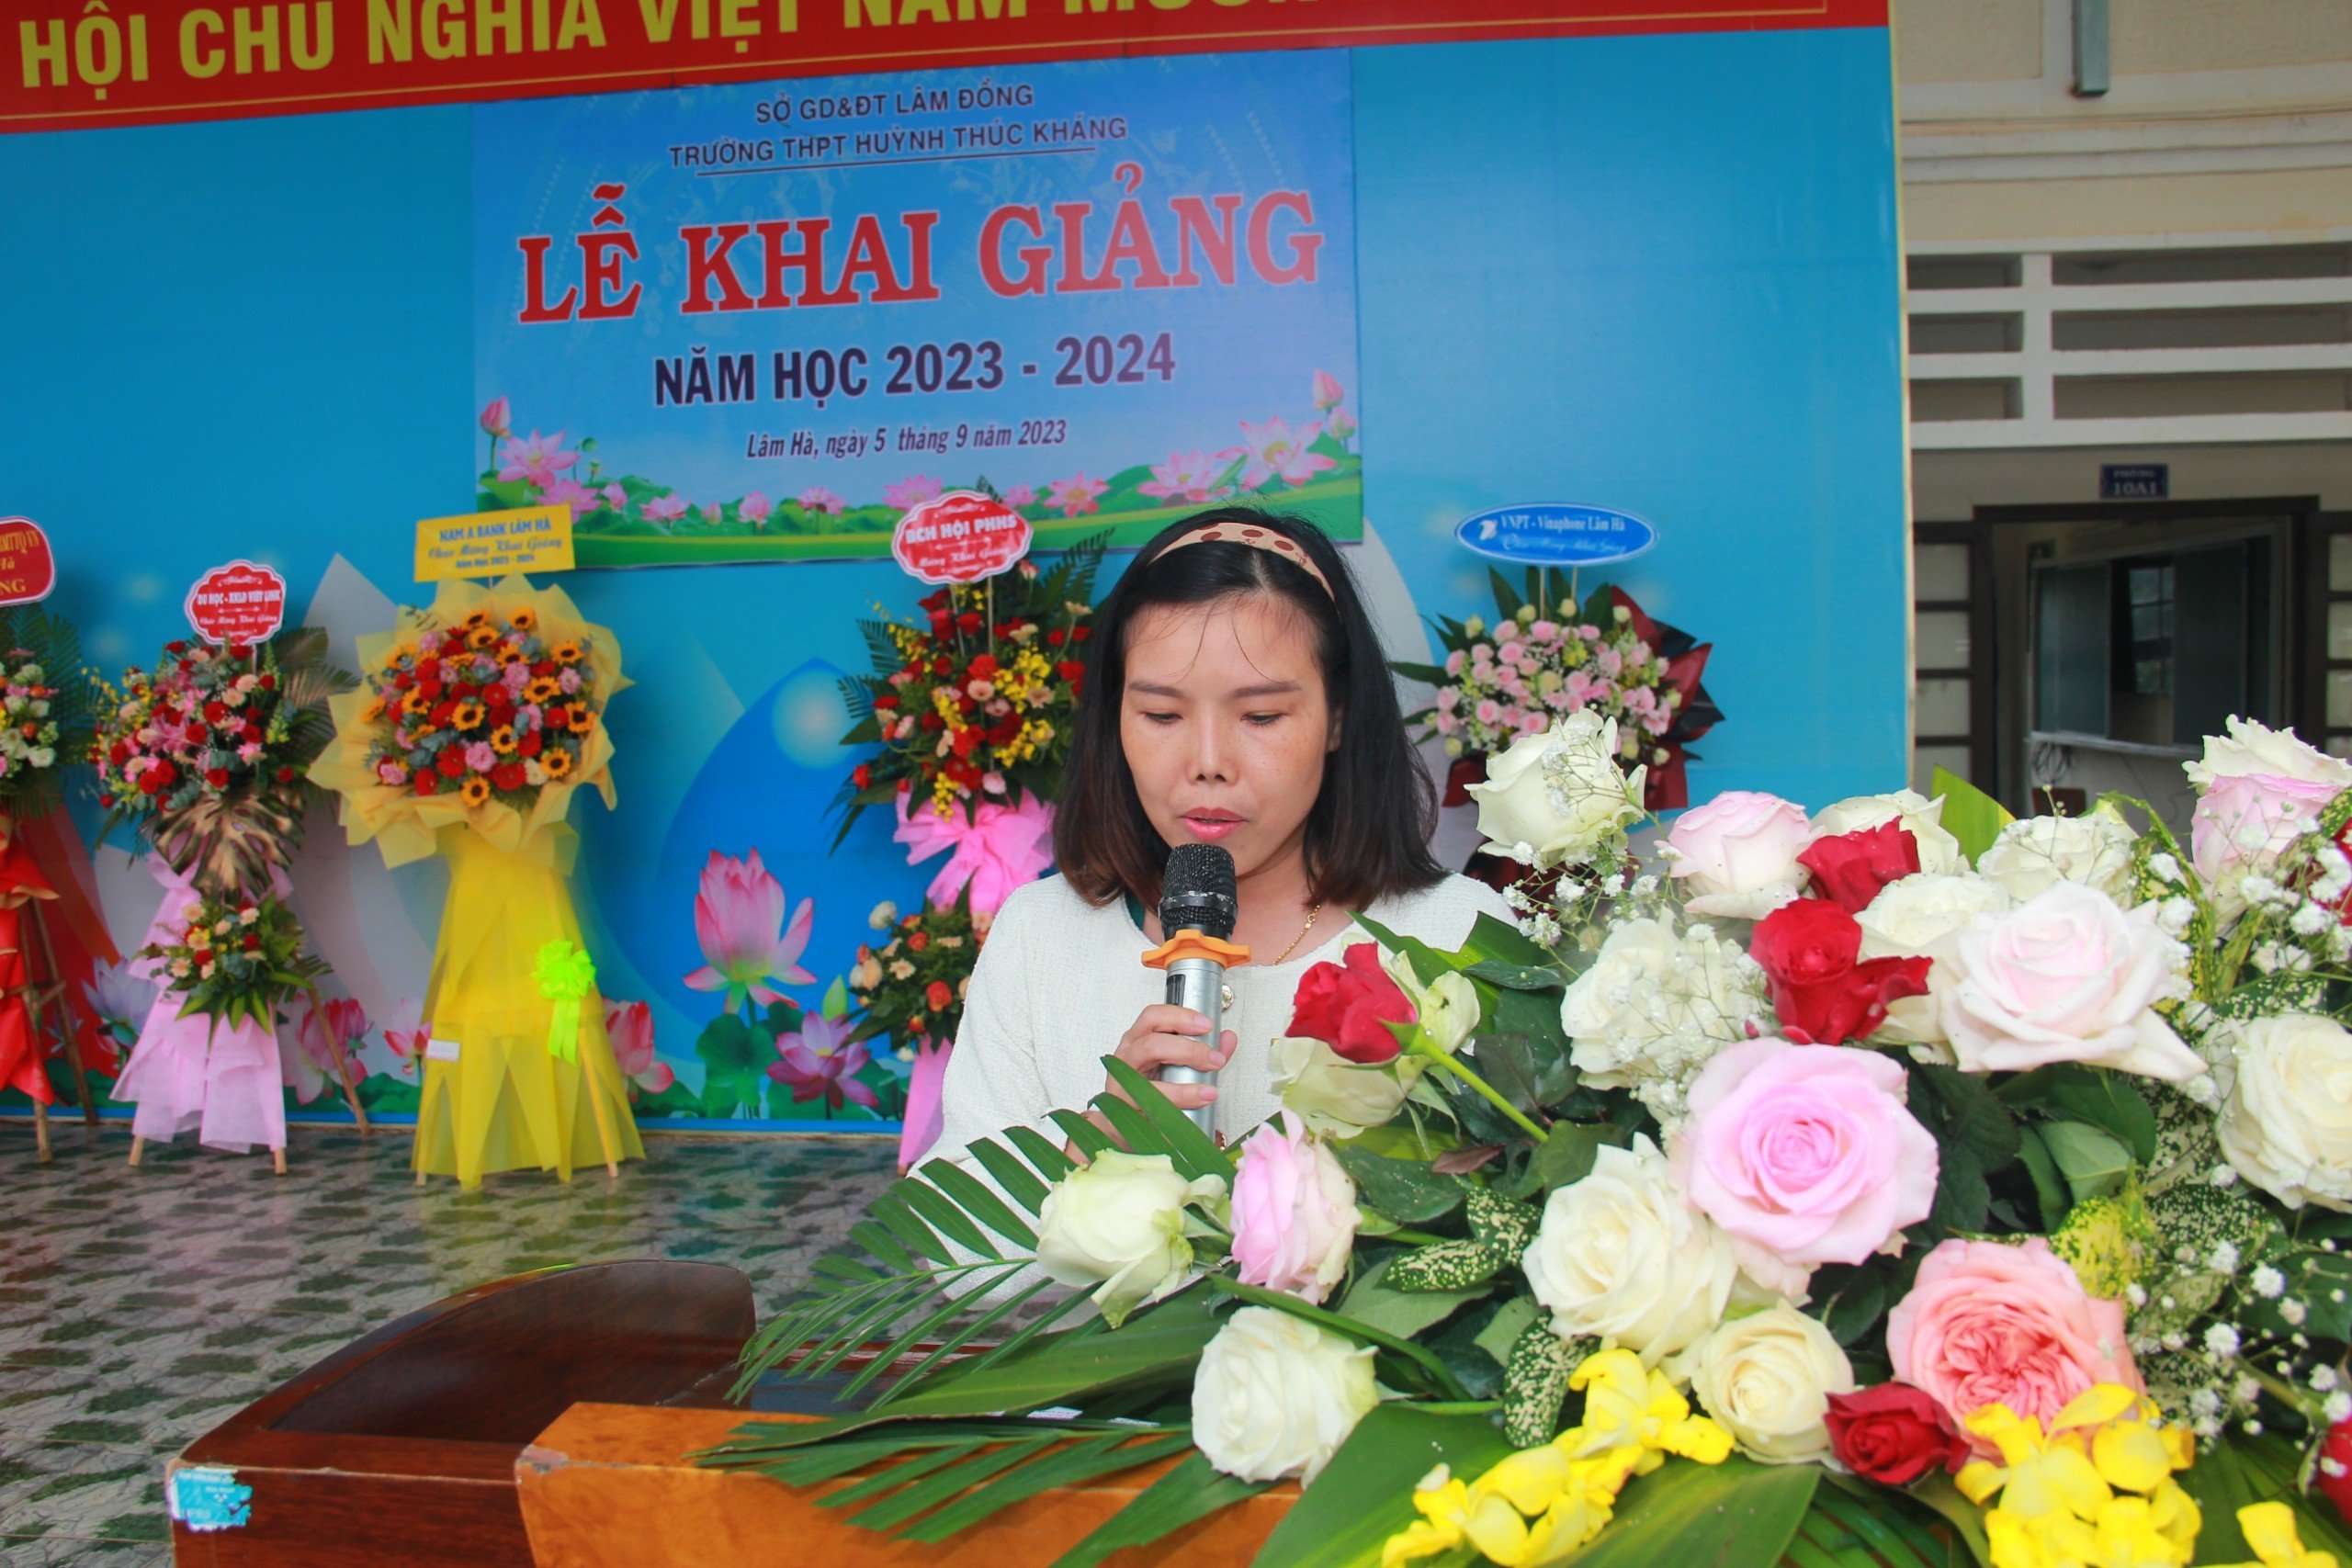 Cô Hoàng Thị Ngọc Hương - Phó hiệu trưởng nhà trường đọc thư của Chủ Tịch nước Võ Văn Thưởng gửi cho ngành Giáo dục nhân dịp khai giảng năm học 2023 - 2024